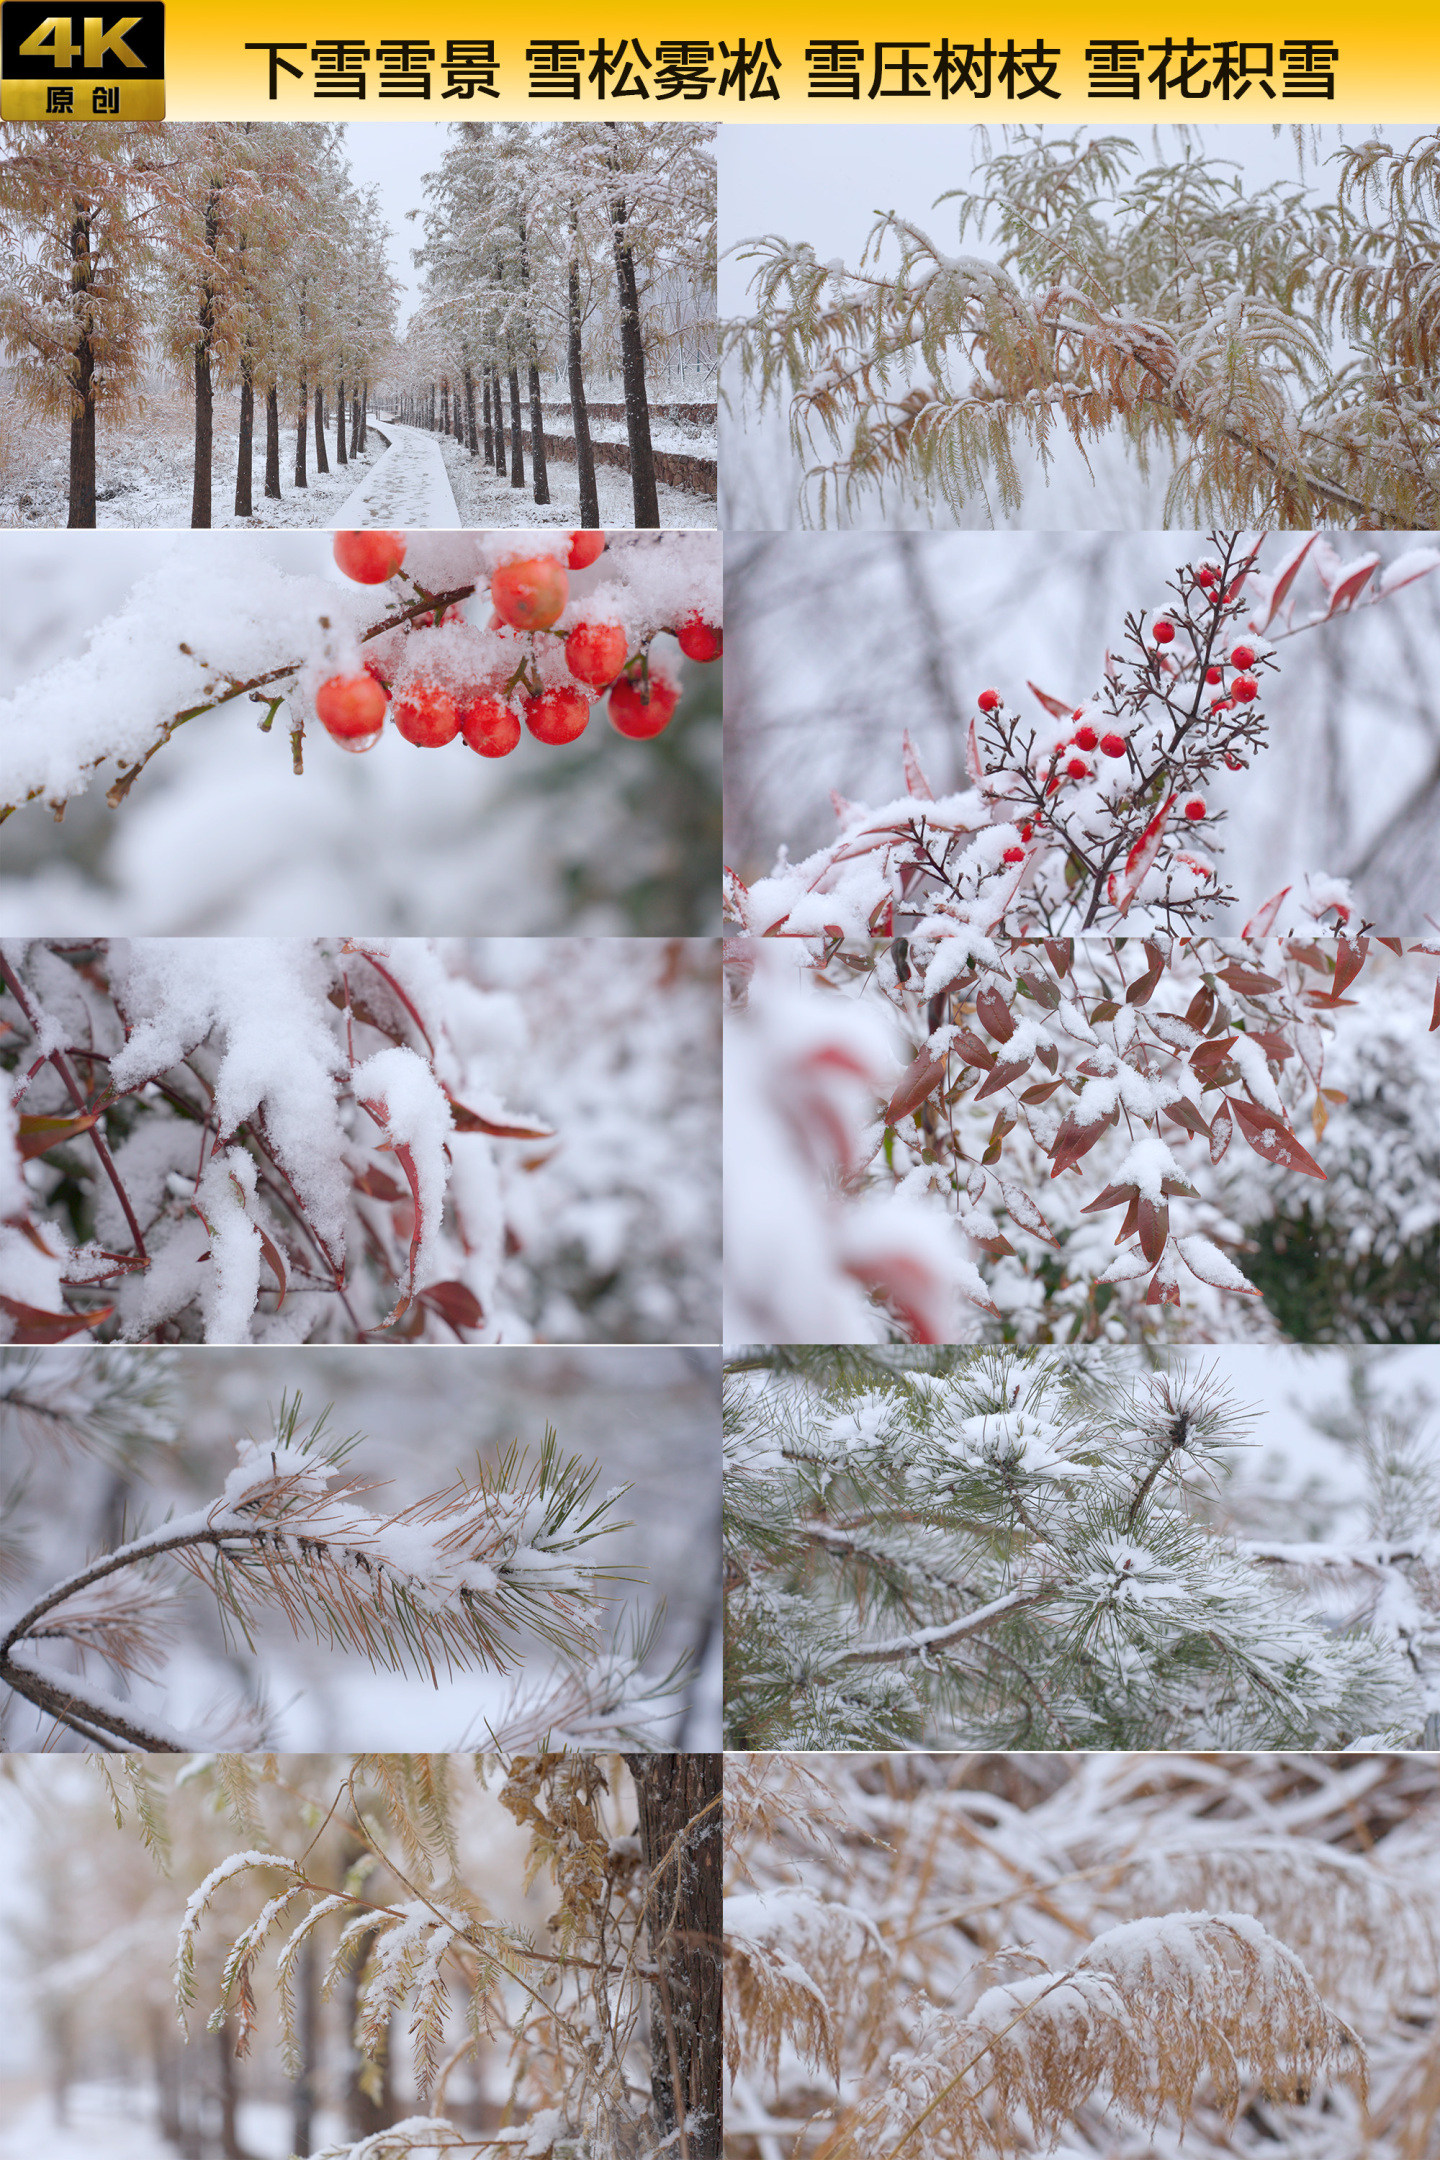 下雪雪景 雪松雾凇 雪压树枝 雪花积雪